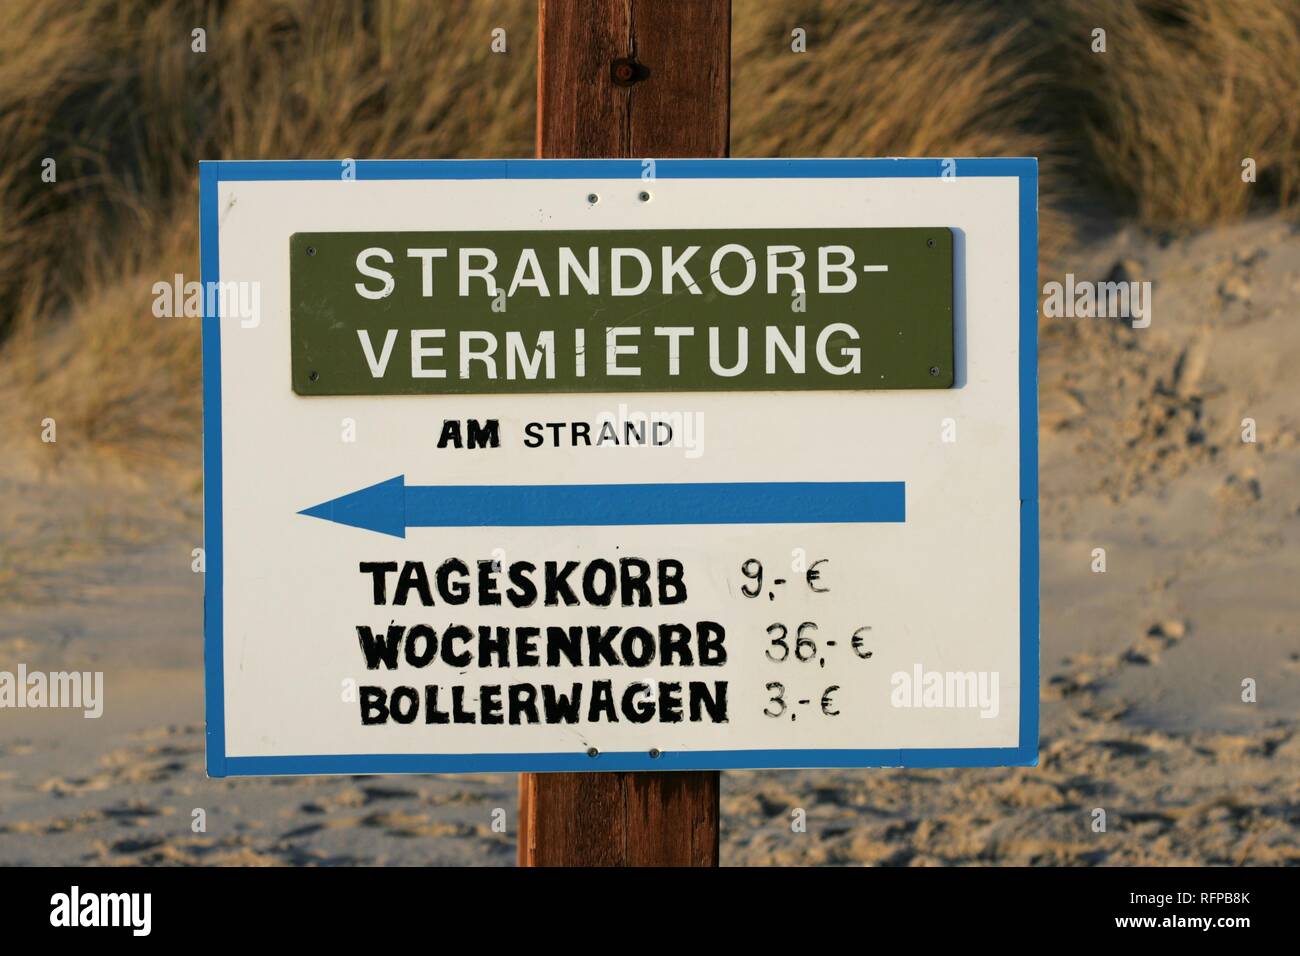 DEU, Allemagne, Amrum island Mer : Amrum. Inscrivez-vous pour un magasin de location de chaises de plage à baldaquin. Banque D'Images